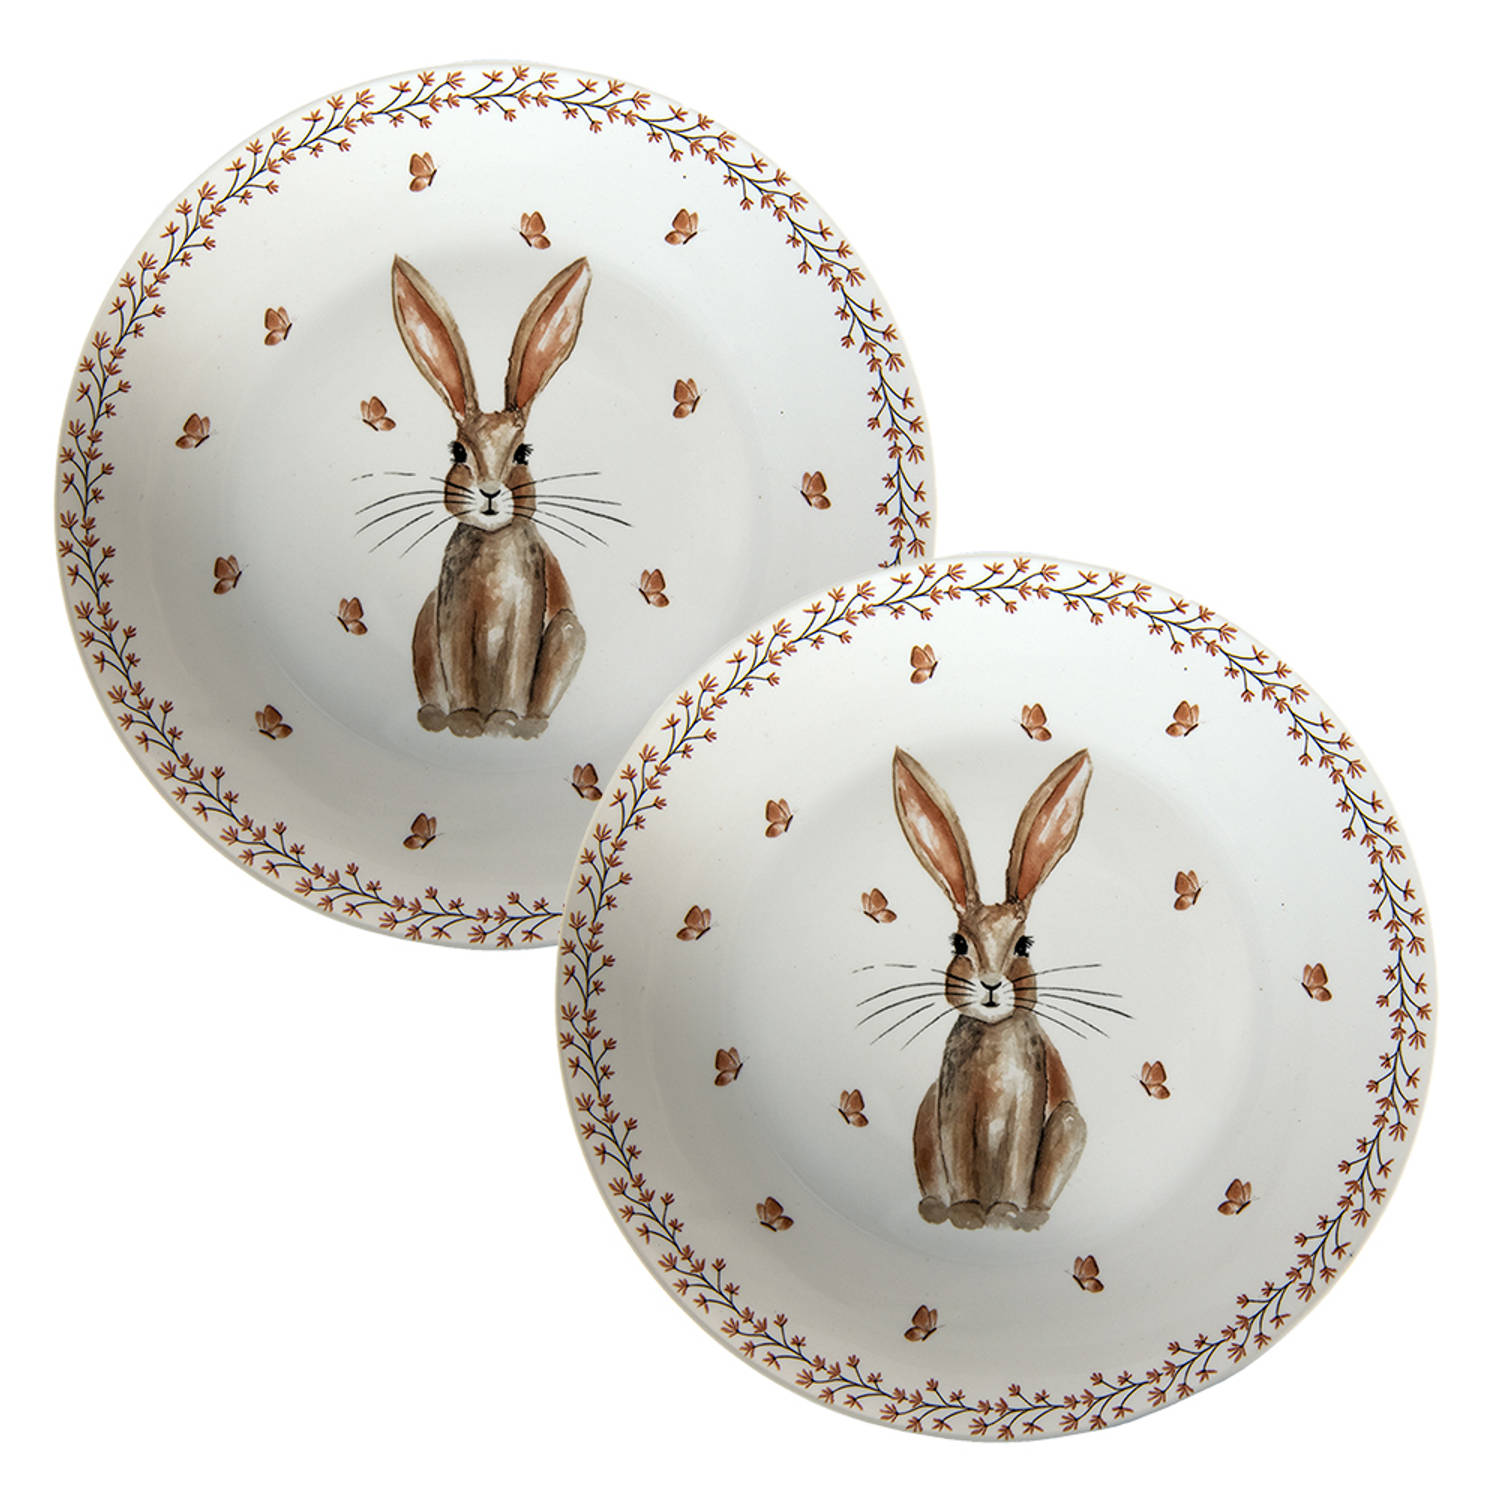 HAES DECO - Set van 2 Ontbijtborden - formaat Ø 20x2 cm - kleuren Bruin / Wit - Bedrukt Porselein - Collectie: Rustic Easter Bunny - Ontbijtbord, klein bord